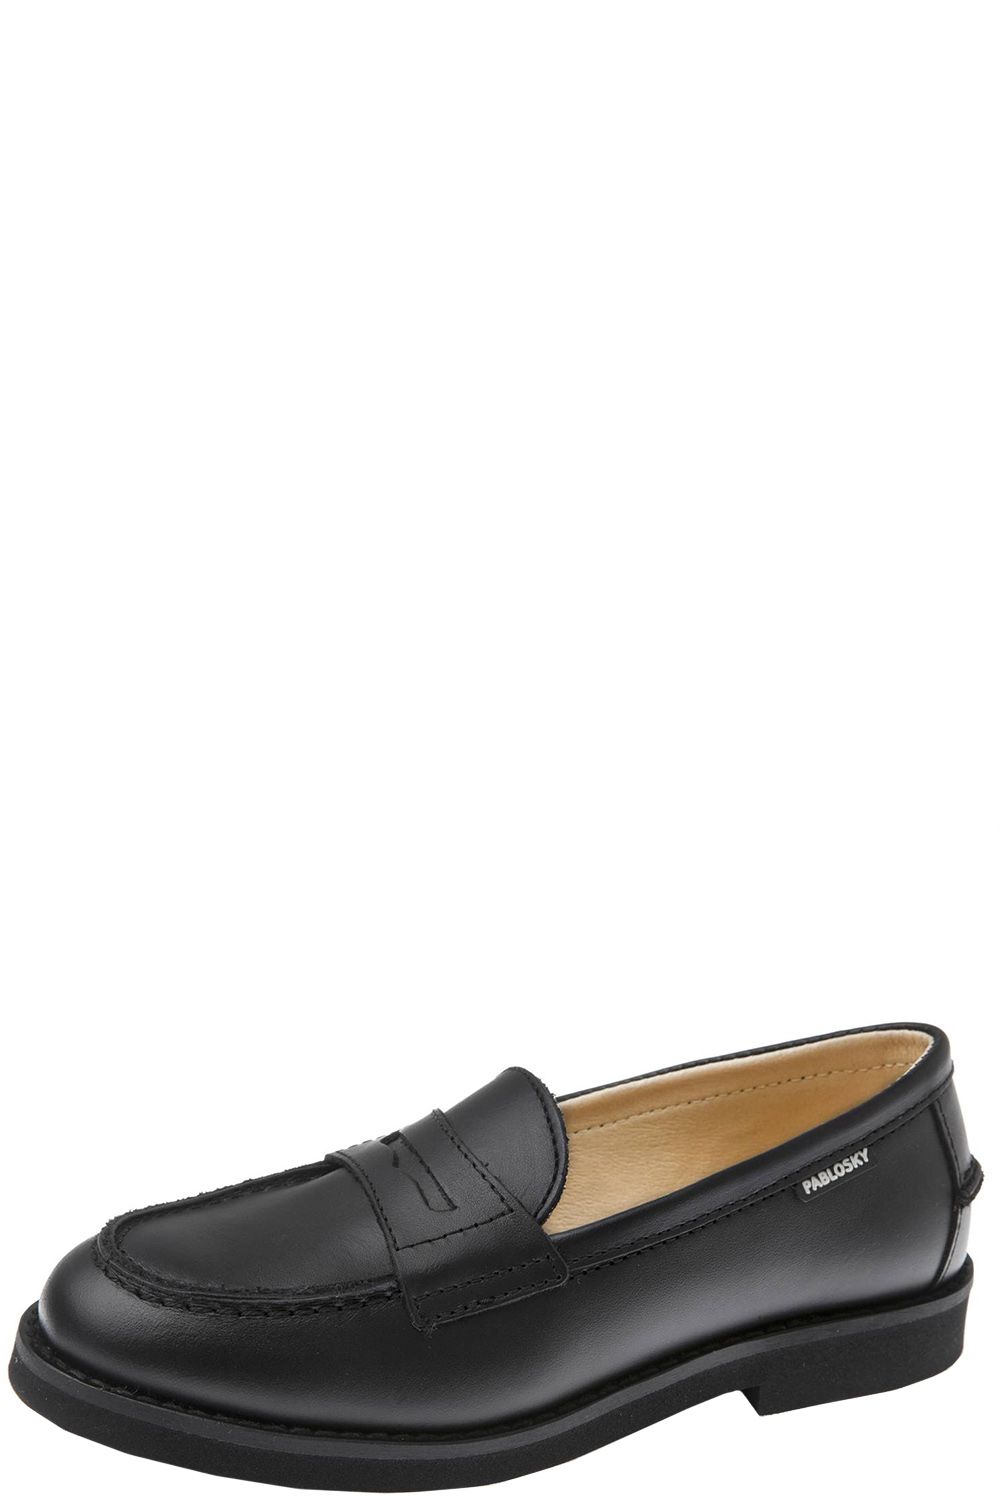 Туфли Pablosky, размер 31, цвет черный 717610 - фото 1